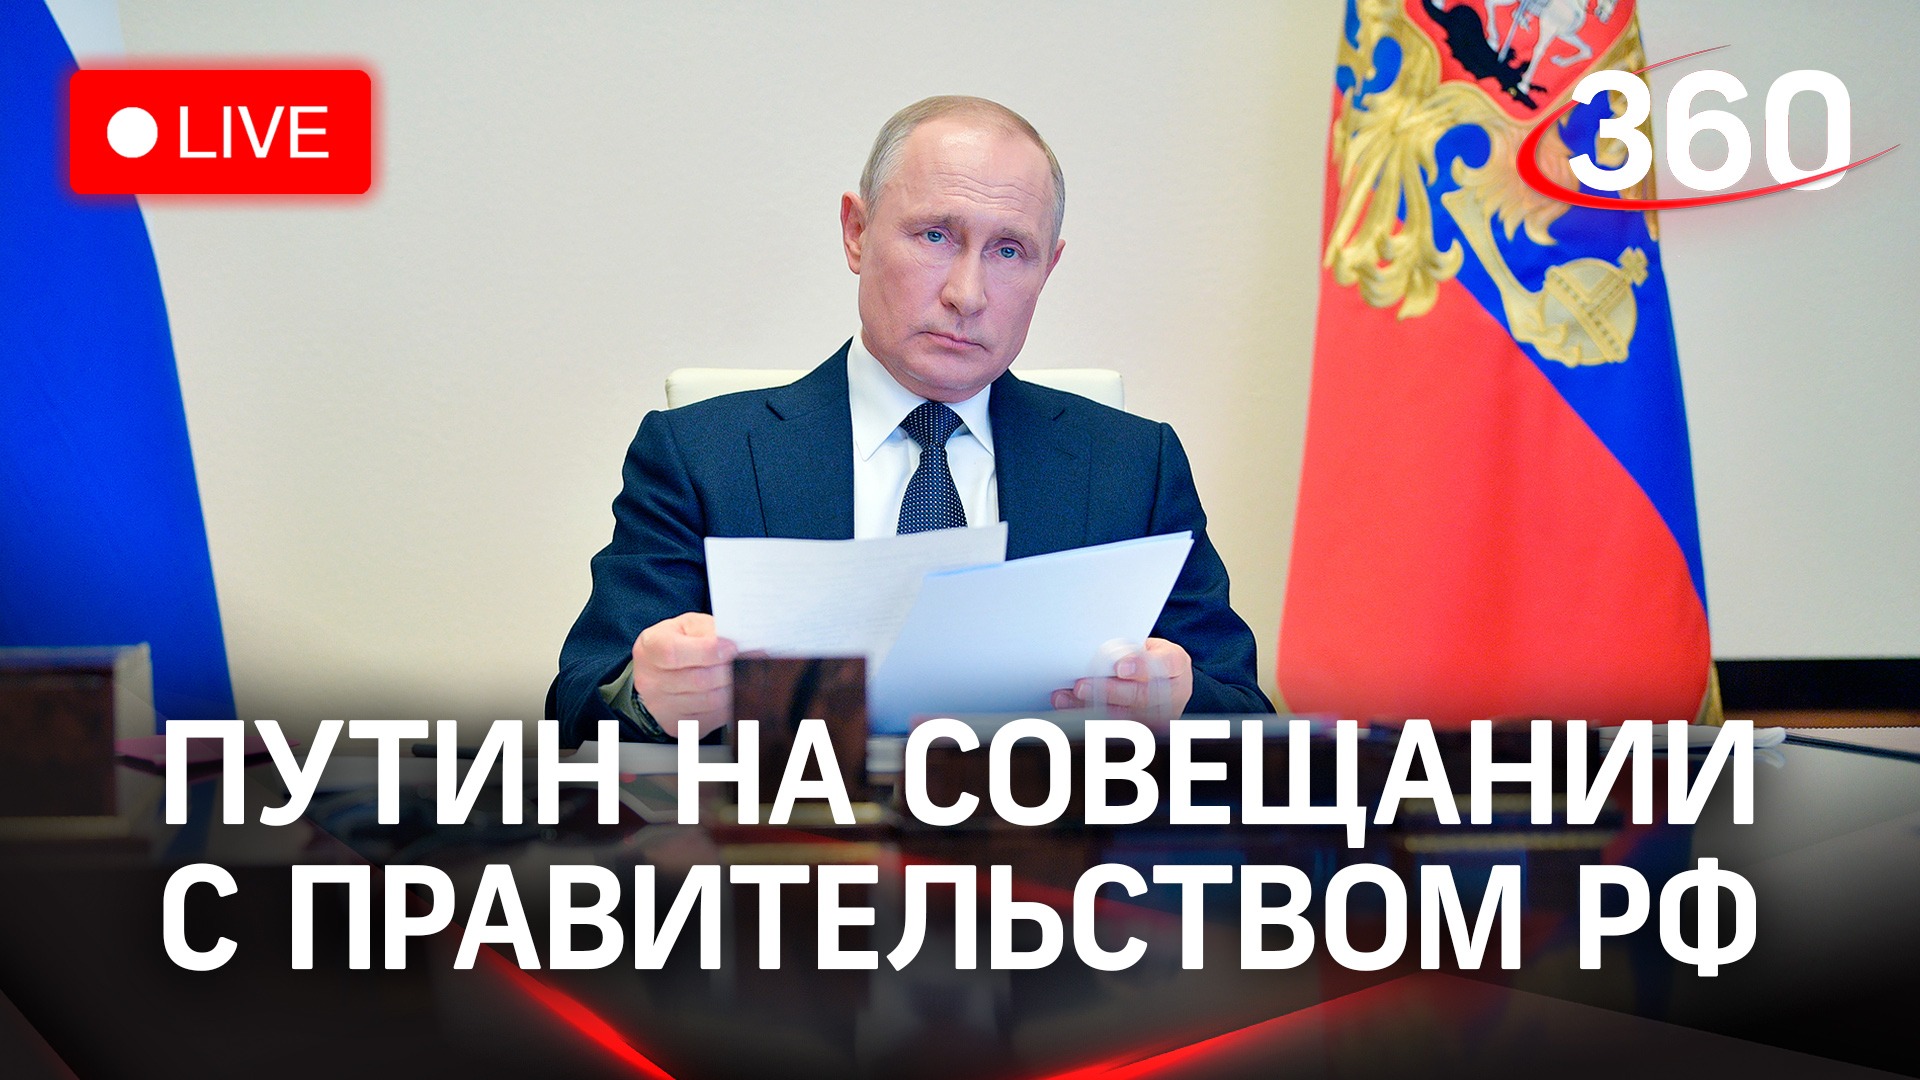 Владимир Путин проводит совещание с правительством РФ